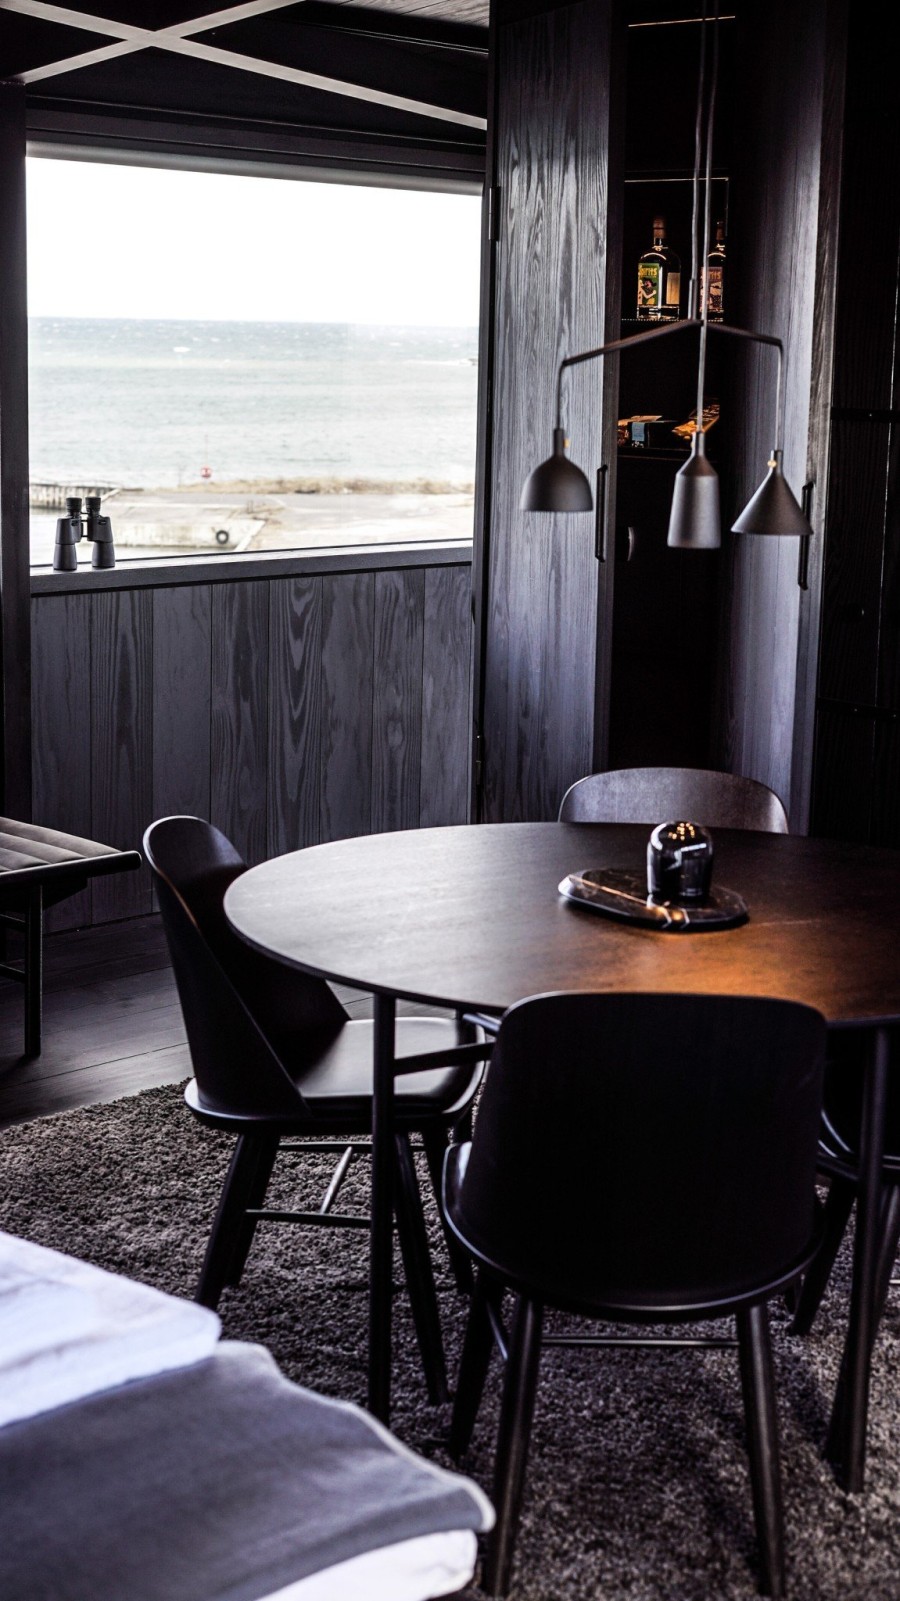  Ένα one room hotel μέσα σ' έναν γερανό στο λιμάνι της Κοπεγχάγης- Φωτογραφία 5